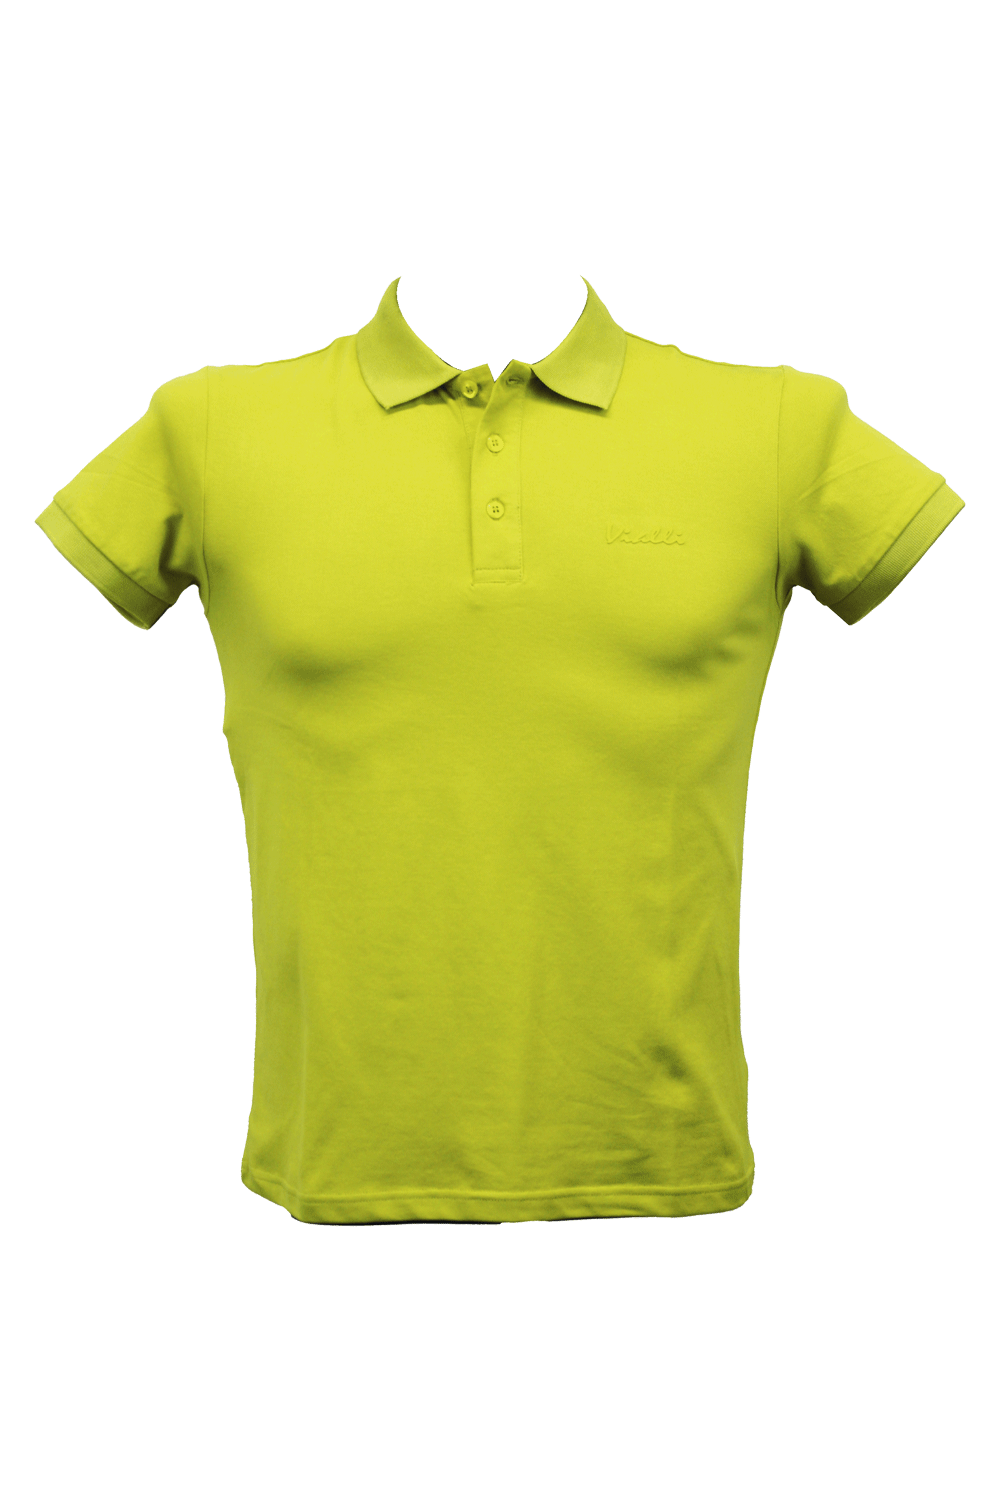 Vialli Lime Green Golfer